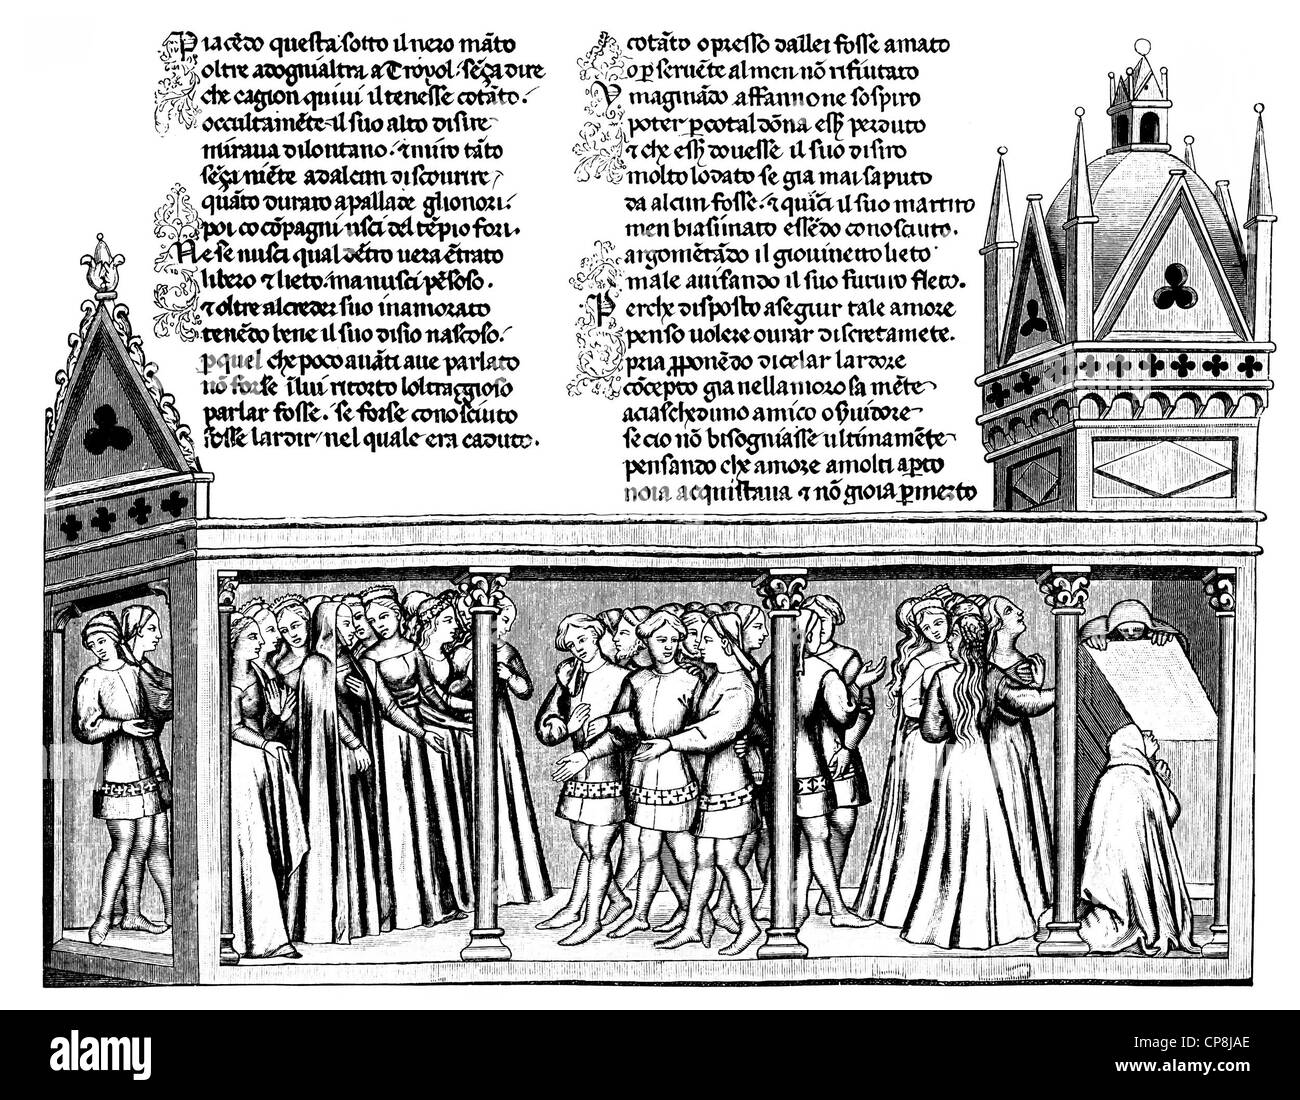 Historische Darstellung aus dem 19. Jahrhundert, Vertretung nach dem epischen Il Filostrato, Troilus und Griseida, 1335 von Giova Stockfoto